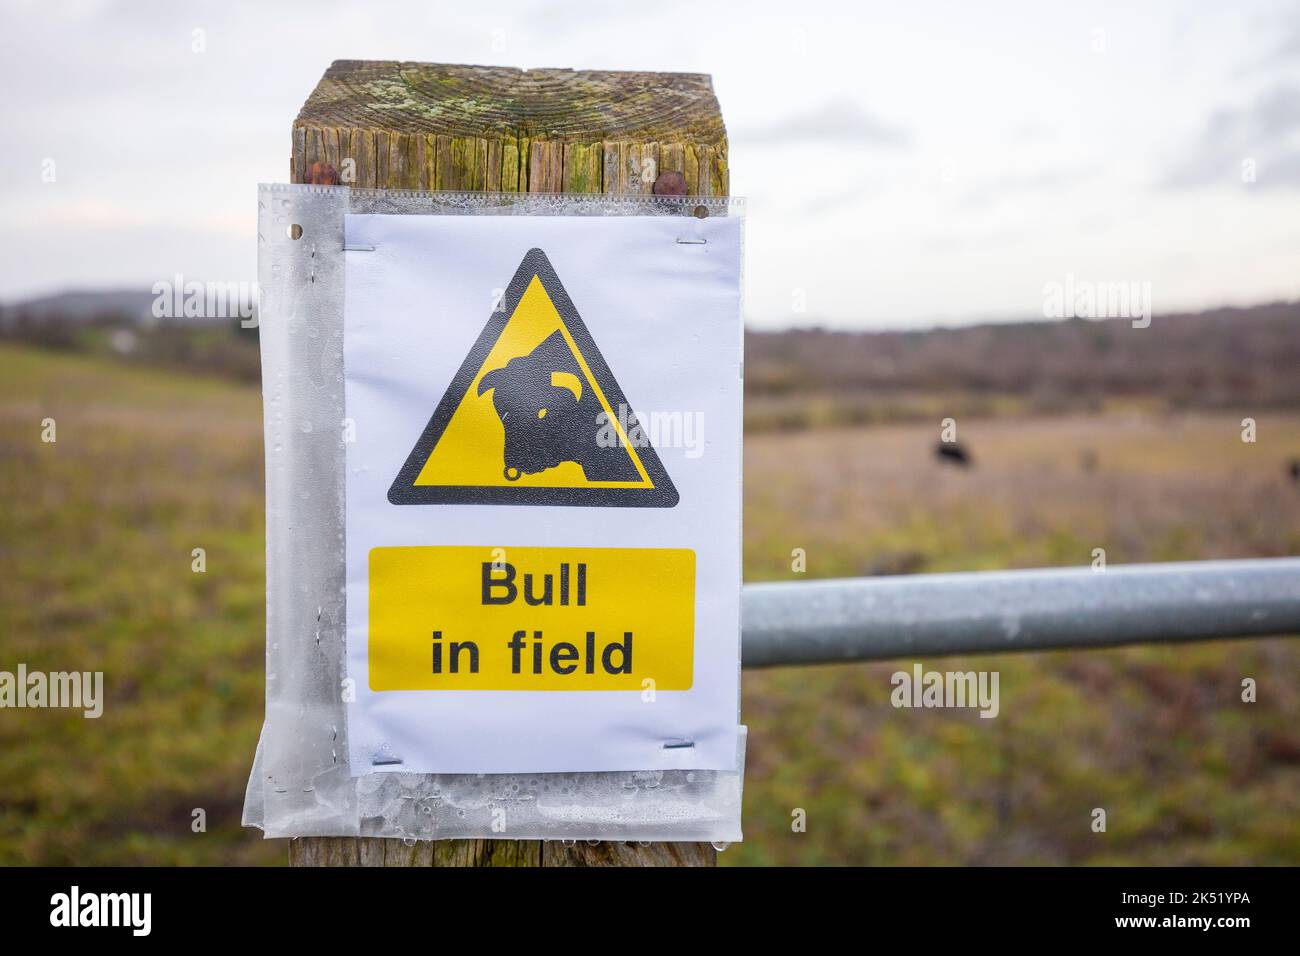 Primo piano di un cartello pubblico isolato/avviso di avvertimento pubblico per essere consapevoli che c'è un "Bull in Field". Consigli per la sicurezza nelle campagne del Regno Unito. Foto Stock